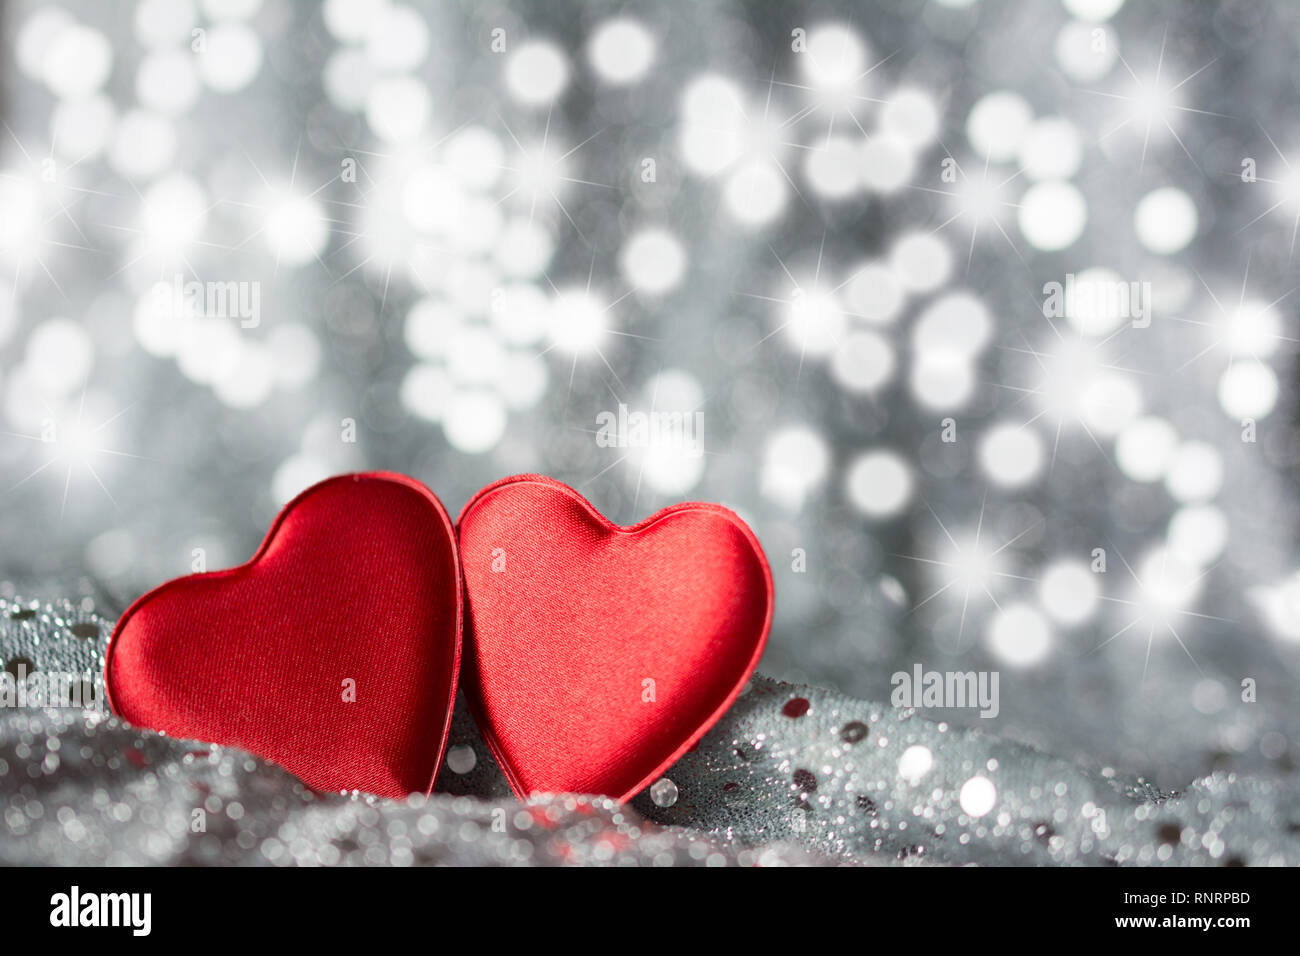 Deux coeurs rouges sur tissu avec paillettes argent - fond argenté avec étoile et taches bokeh Banque D'Images